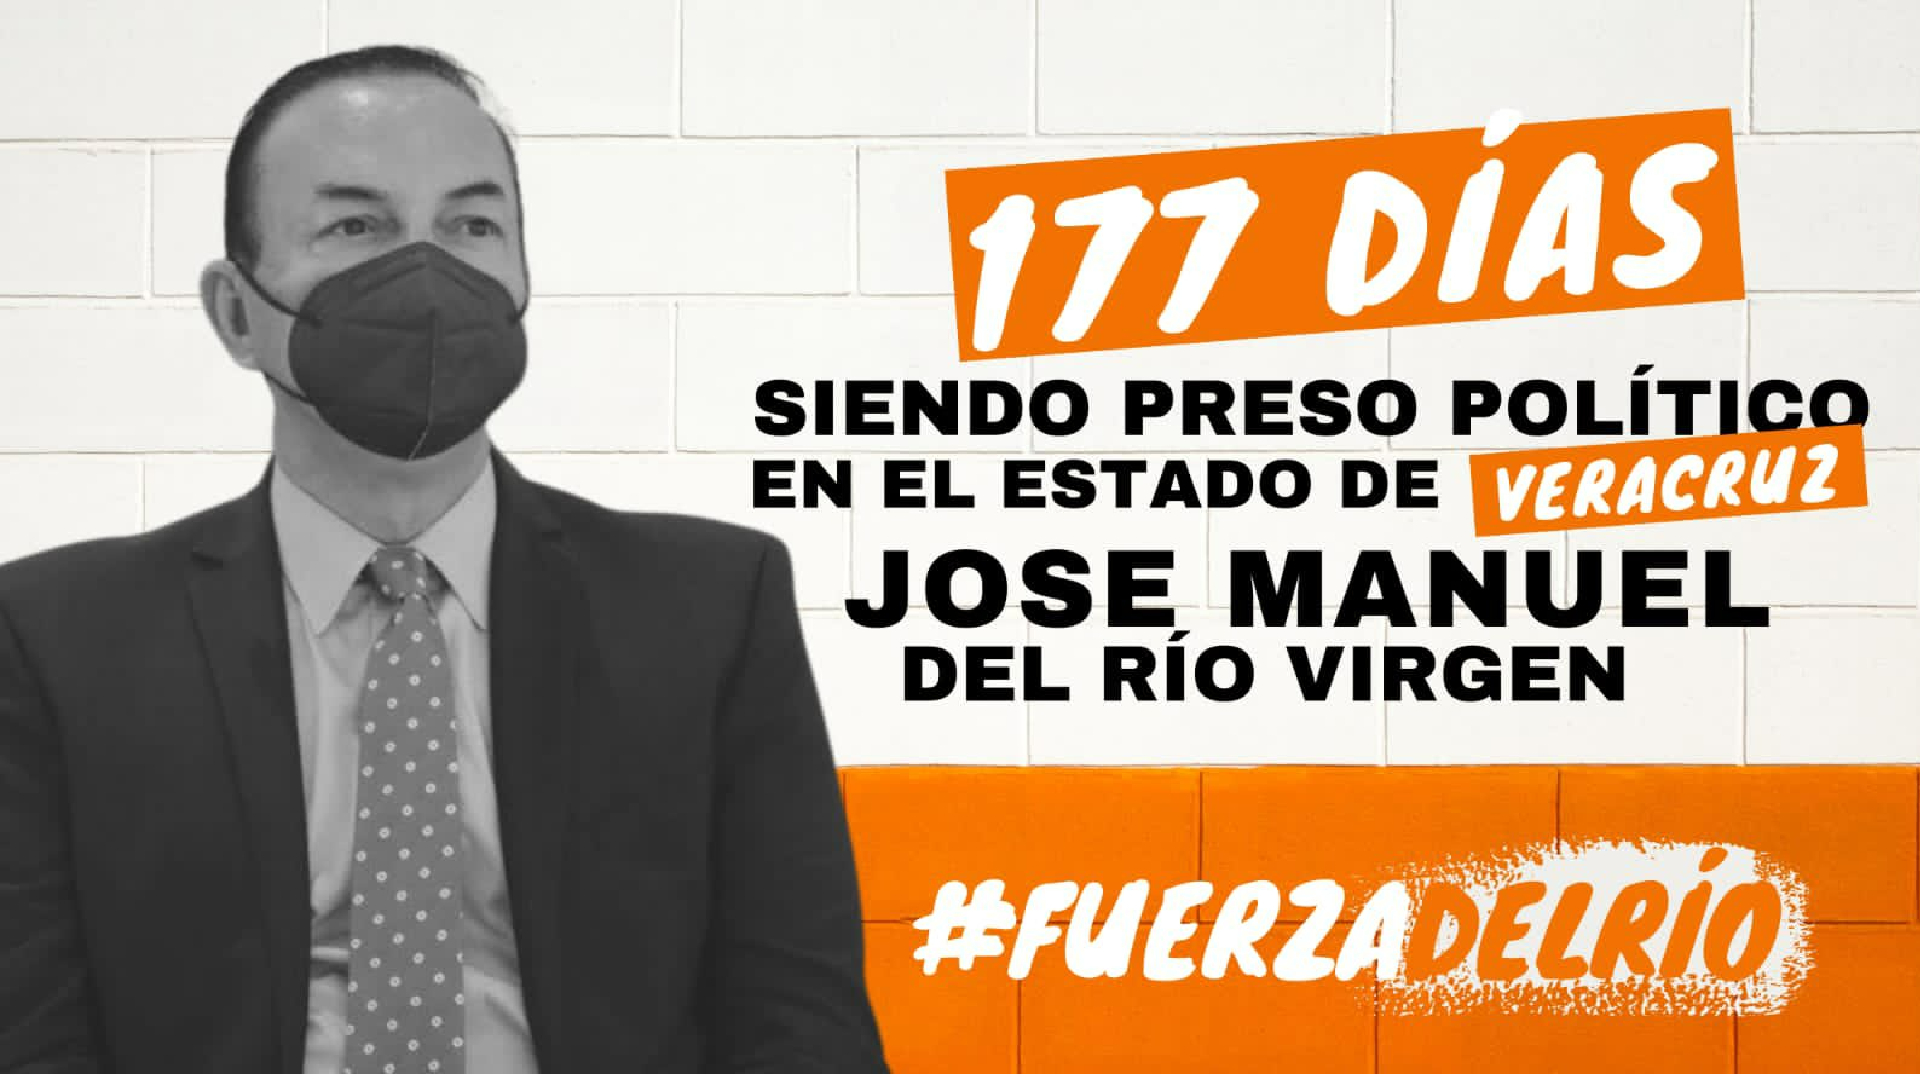 José Manuel del Río Virgen quedará en libertad tras casi seis meses de encarcelamiento (Foto: Twitter / @delriovirgen1)